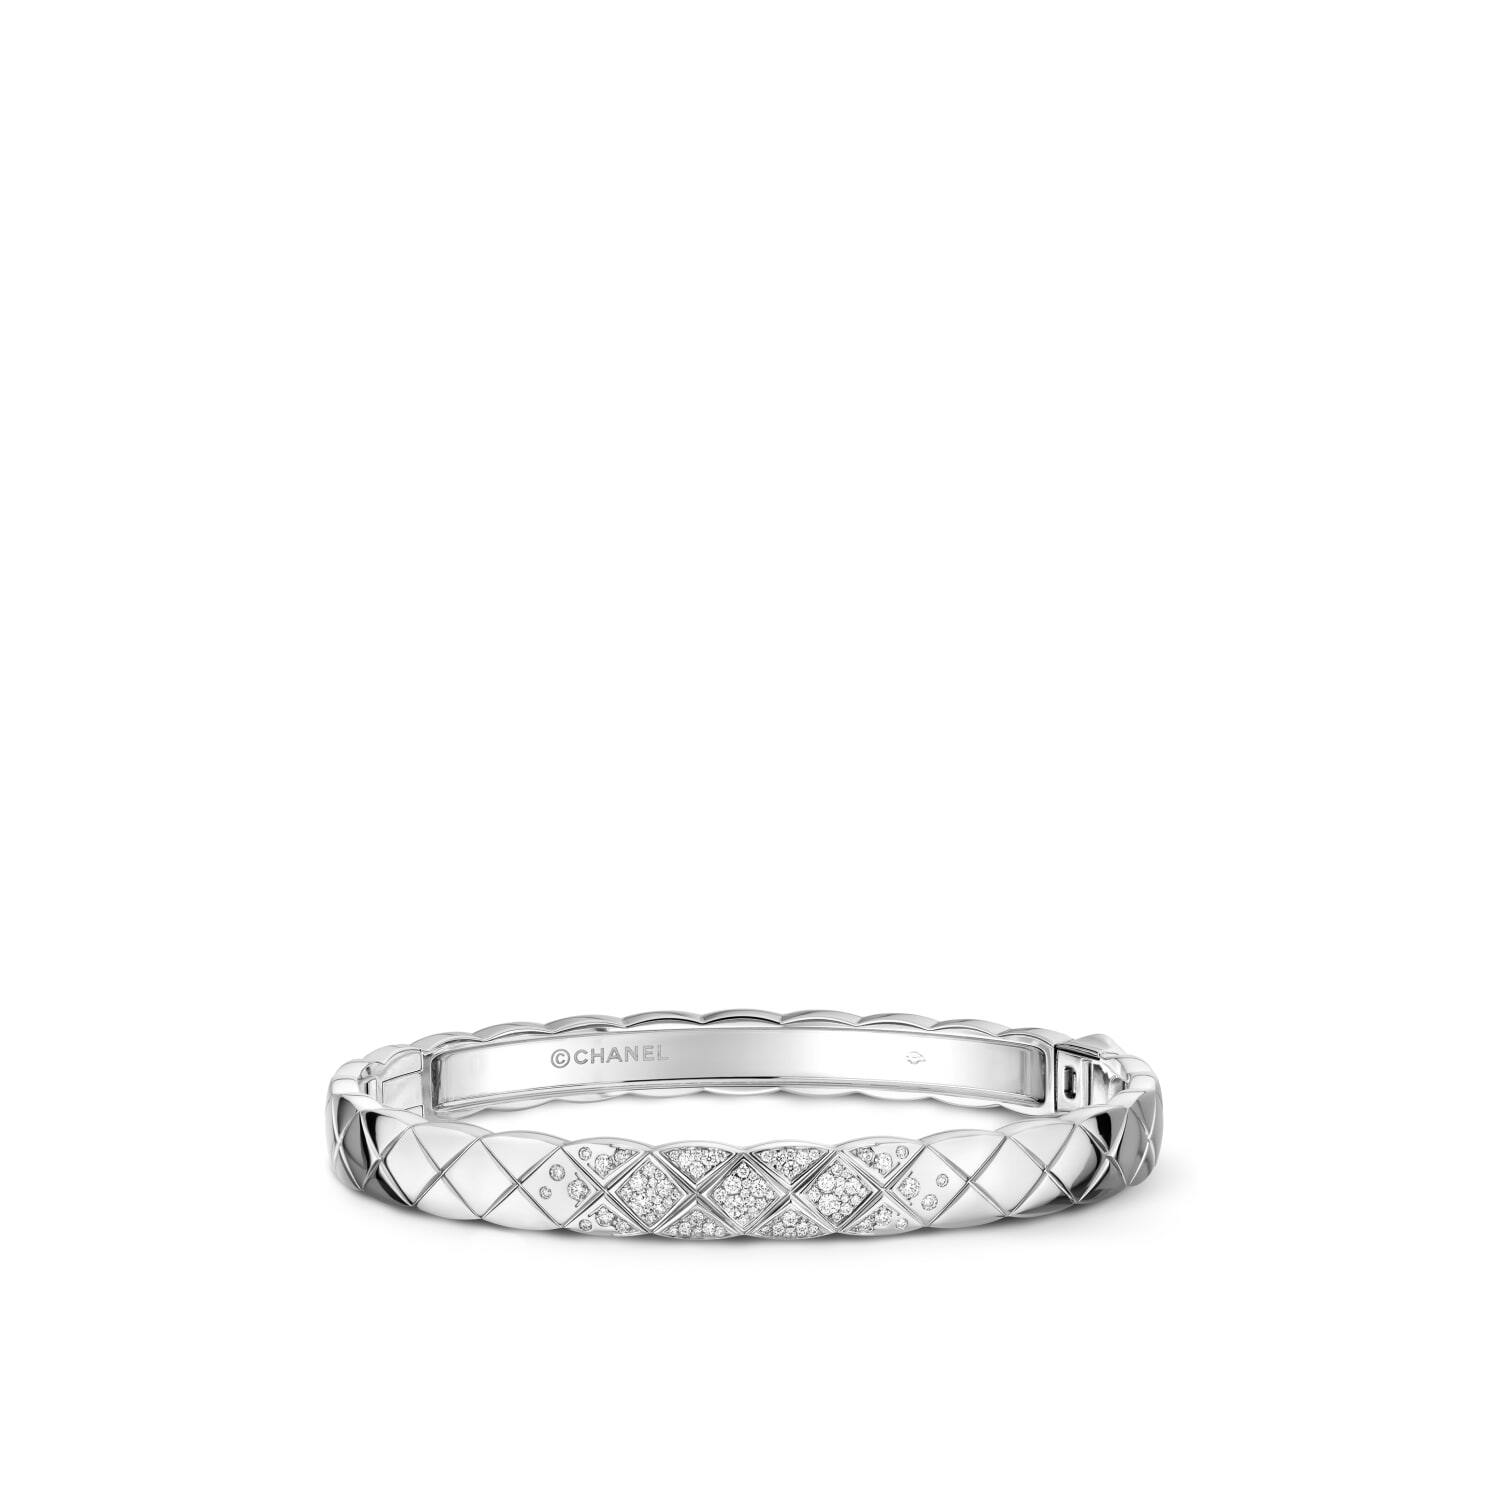 Chanel Coco Crush手鐲採用18K白金材質，經典的菱格圖案綴上81顆閃亮鑽石，配